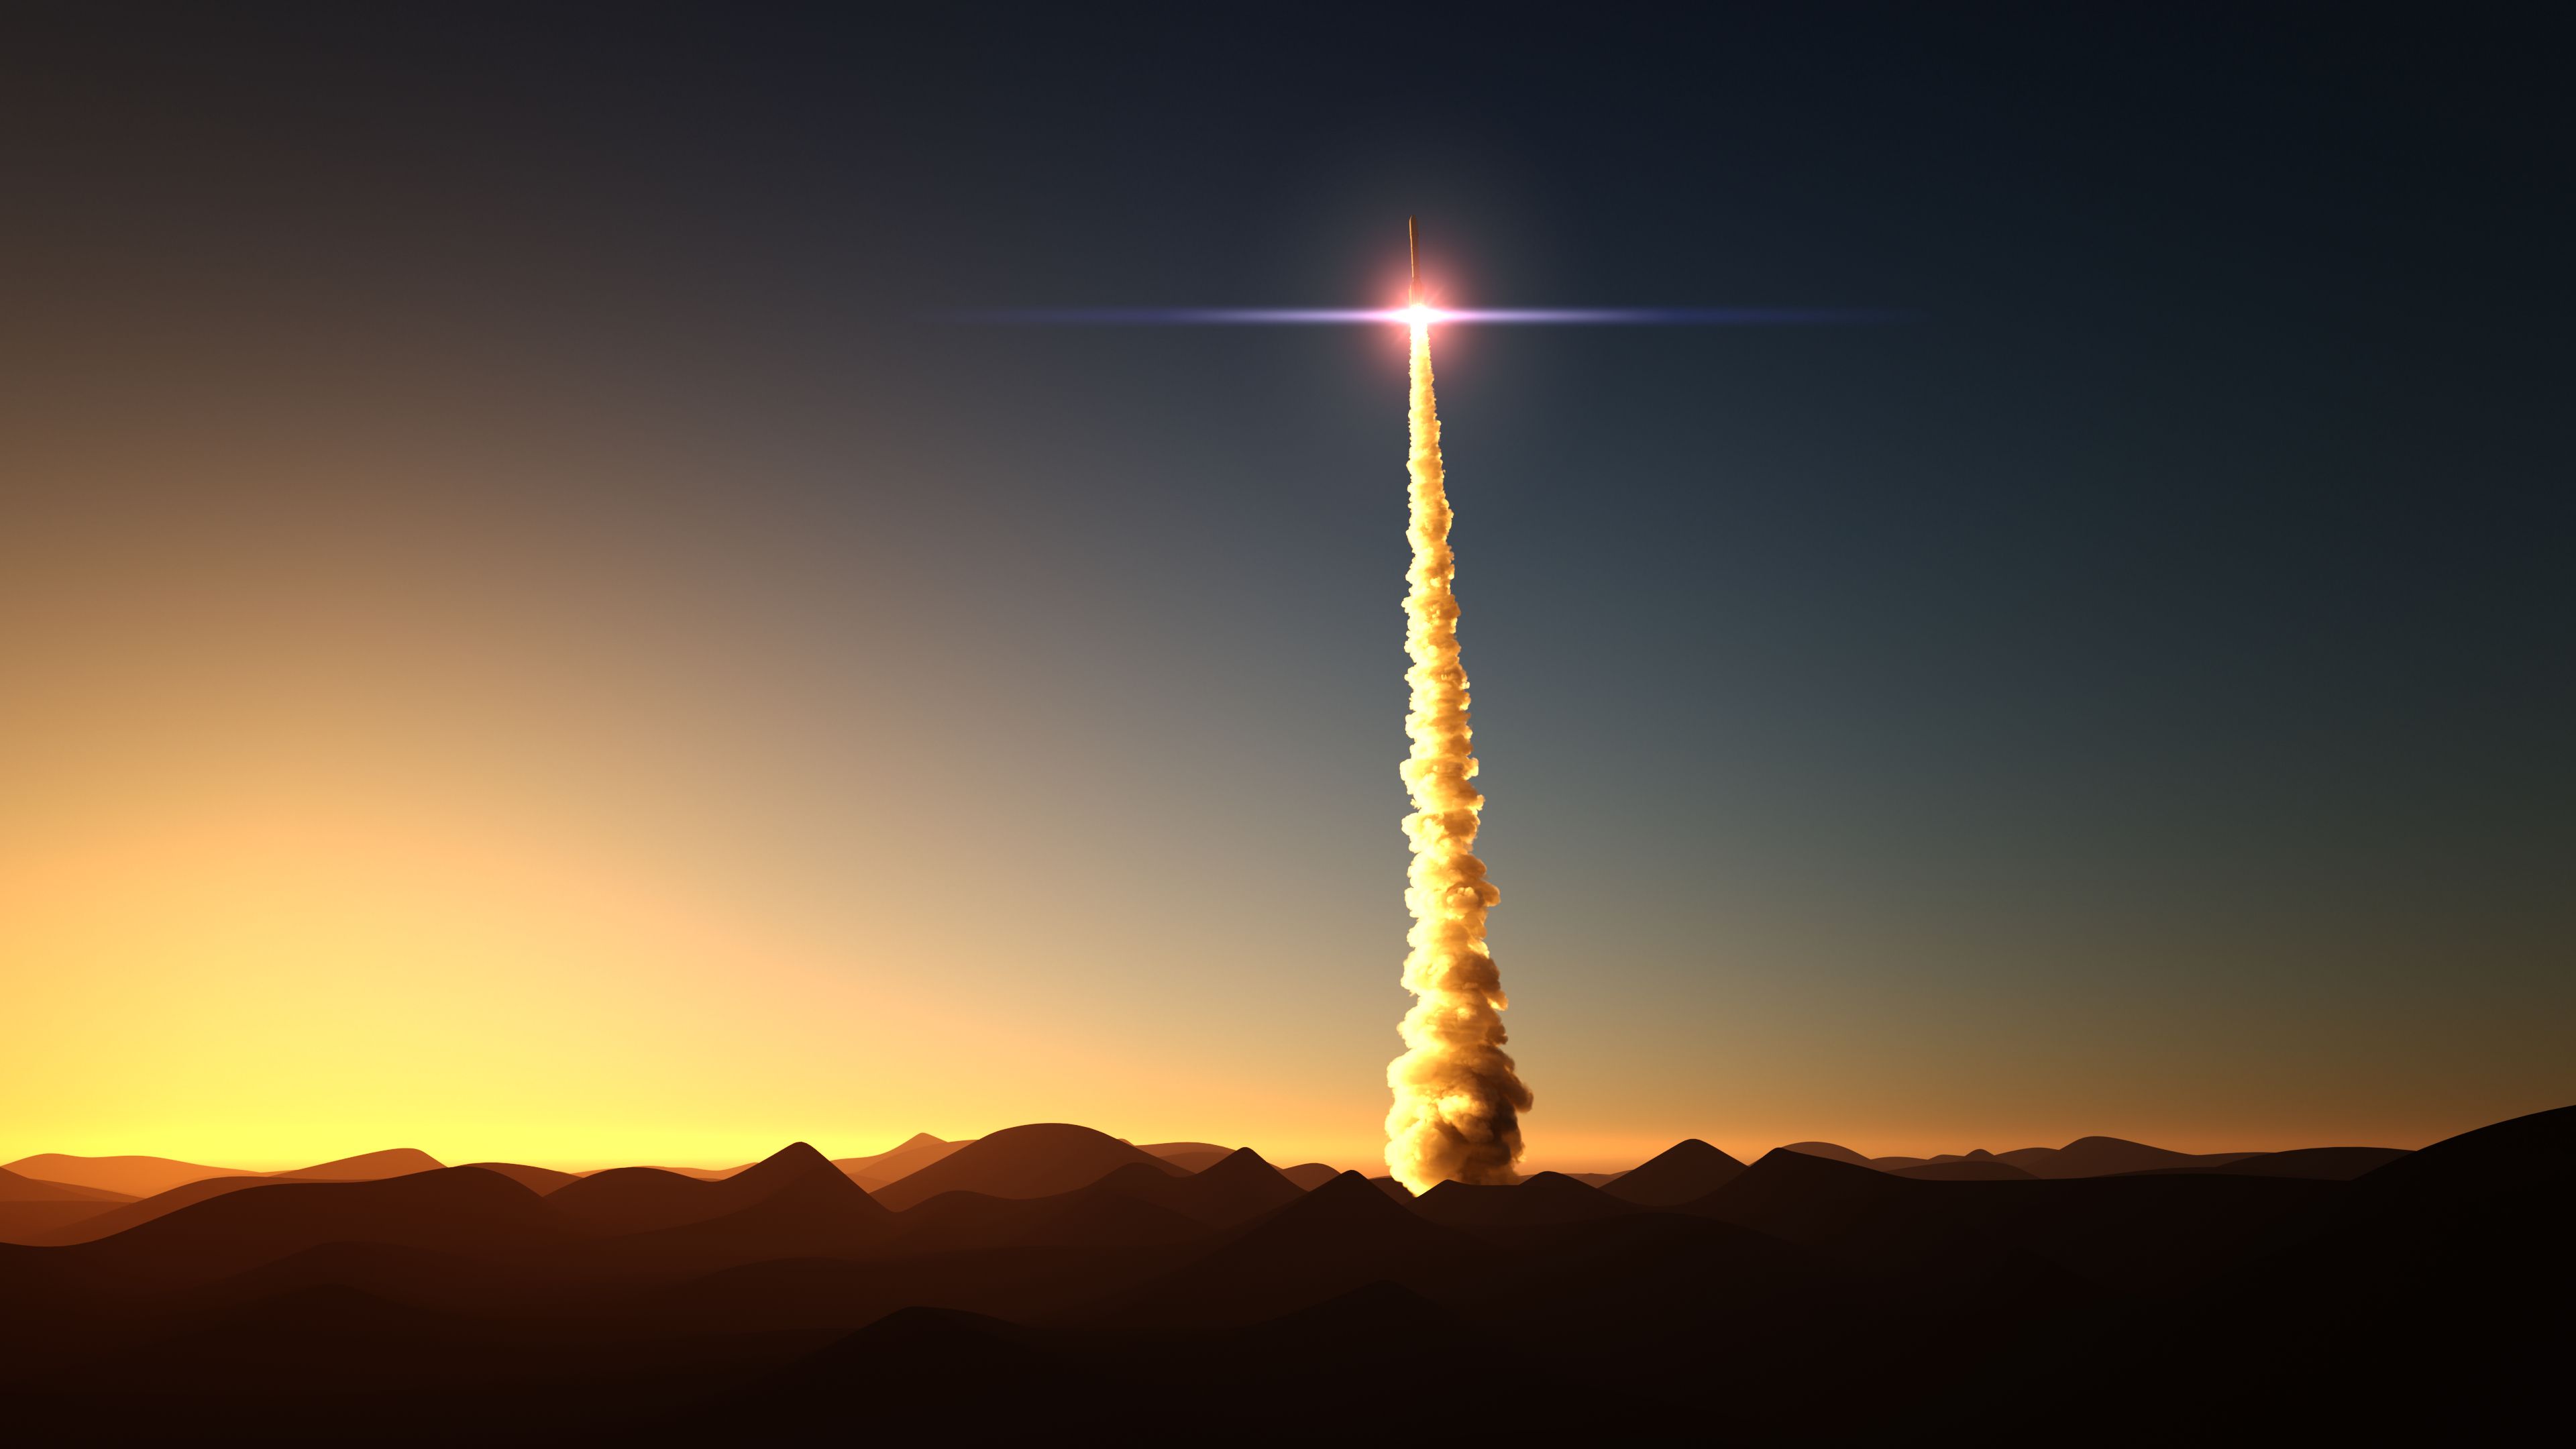 rocket-start-from-desert-royalty-free-image-1586283904.jpg